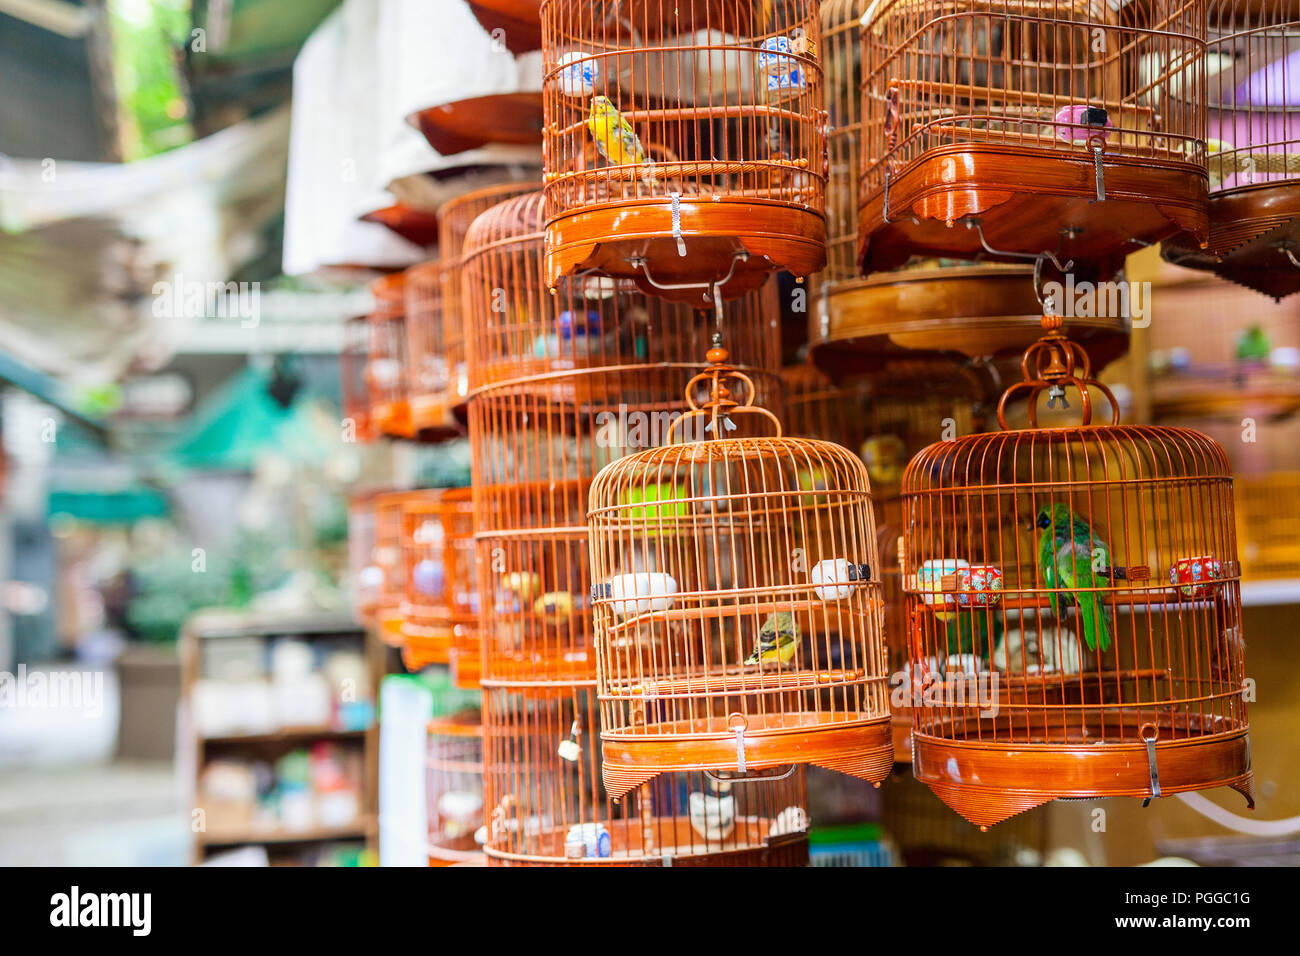 Las aves en jaulas para su venta en el mercado de aves, Kowloon, Hong Kong, popular destino turístico. Foto de stock